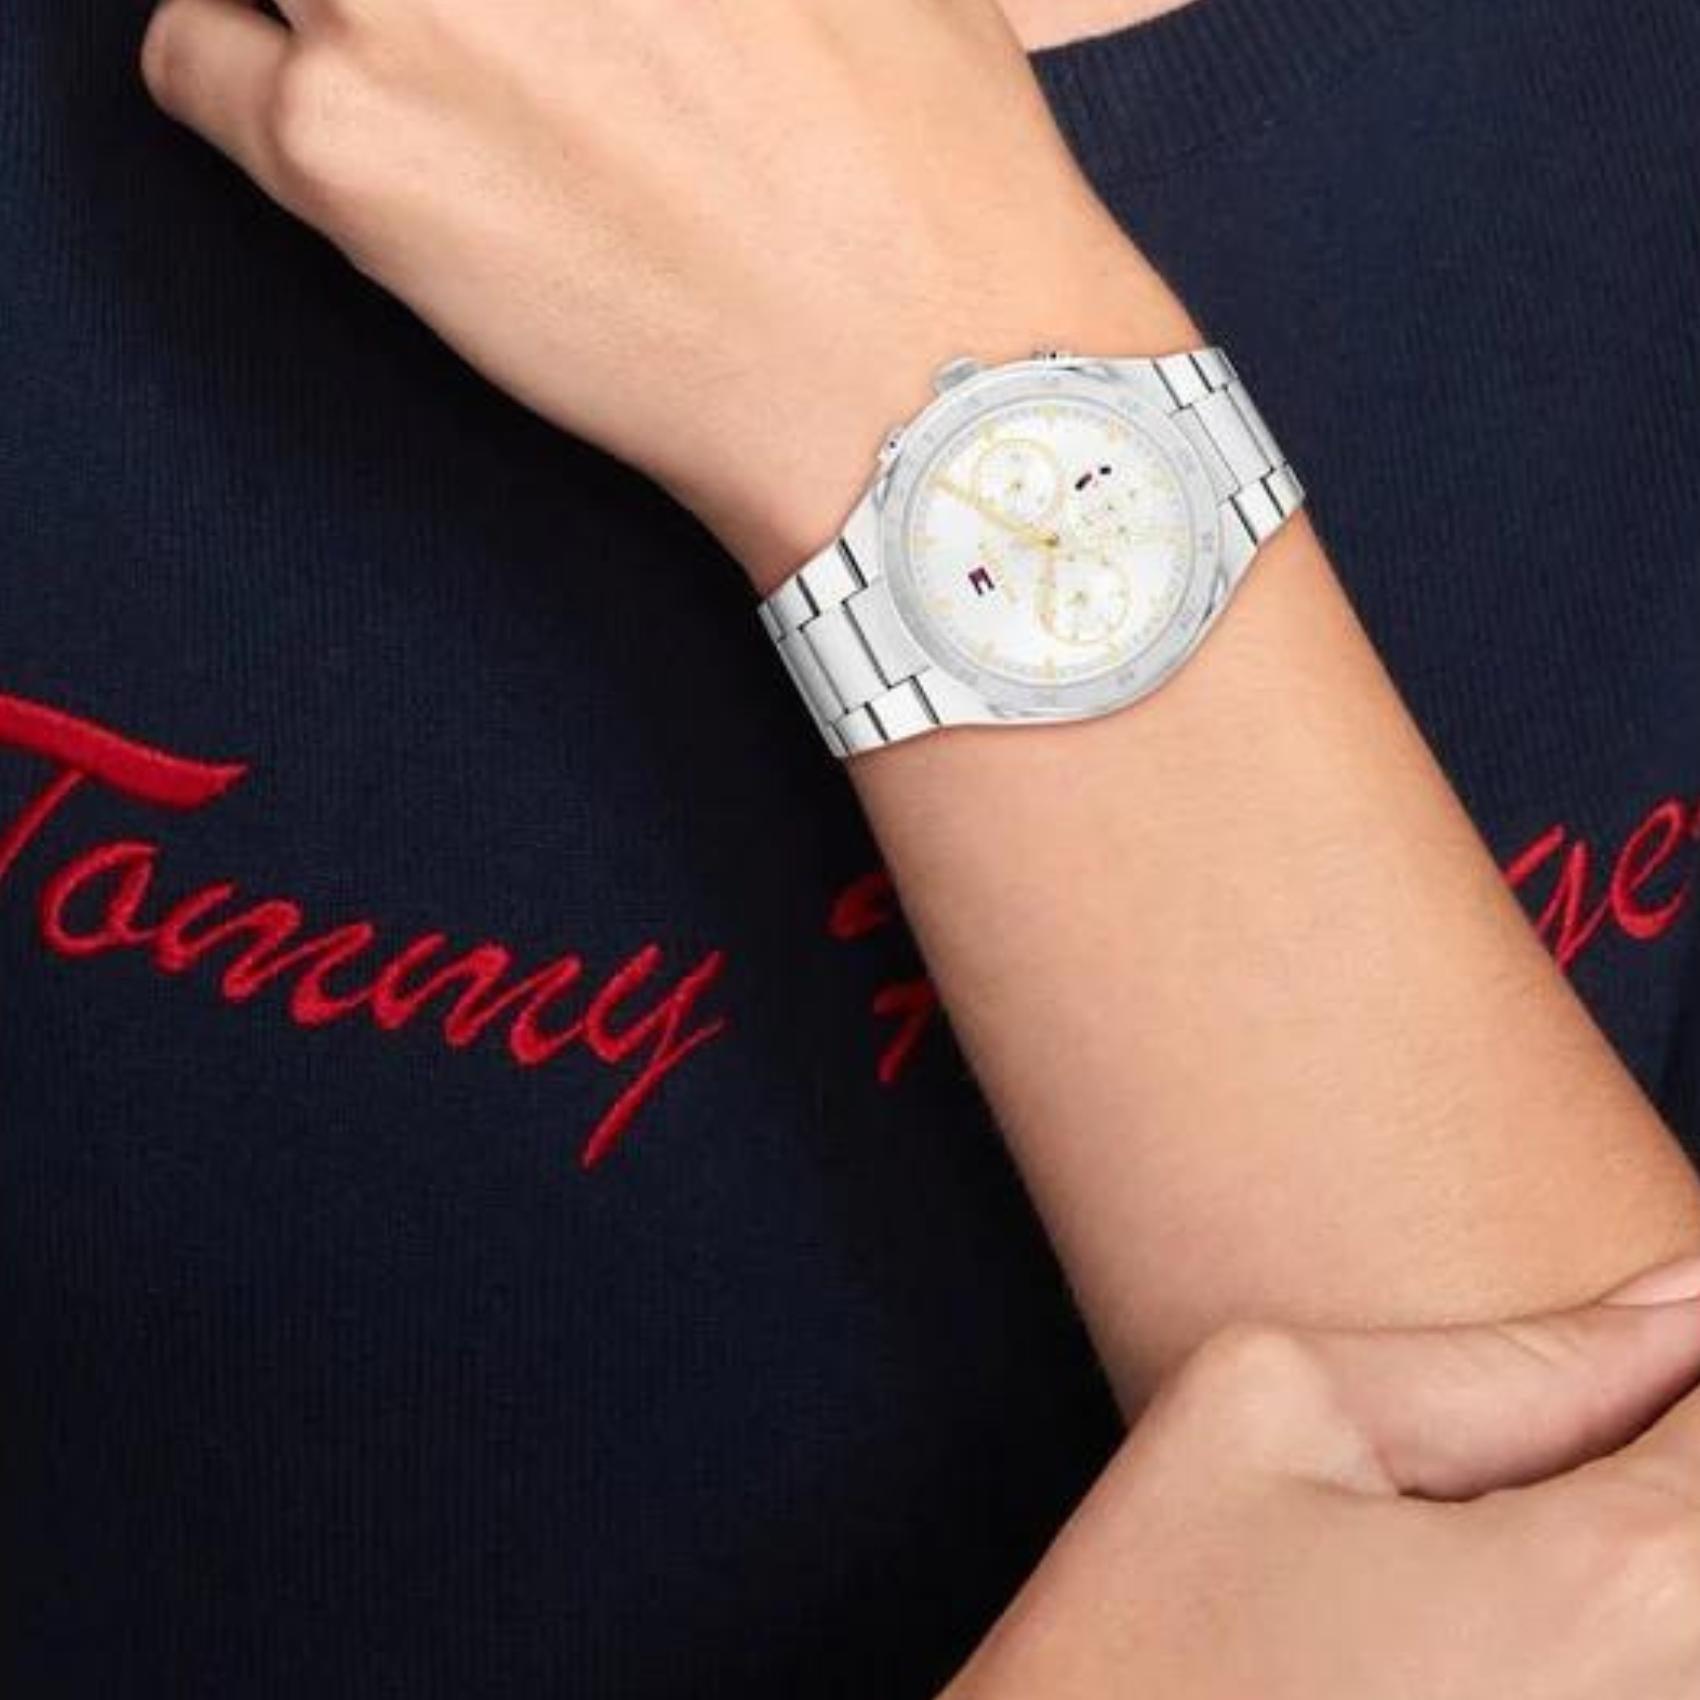 Γυναικείο ρολόι Tommy Hilfiger Carrie 1782573, με μπρασελέ σε ασημί χρώμα από ανοξείδωτο ατσάλι και λευκό καντράν με χρονογράφους και δείκτες σε χρυσό χρώμα.